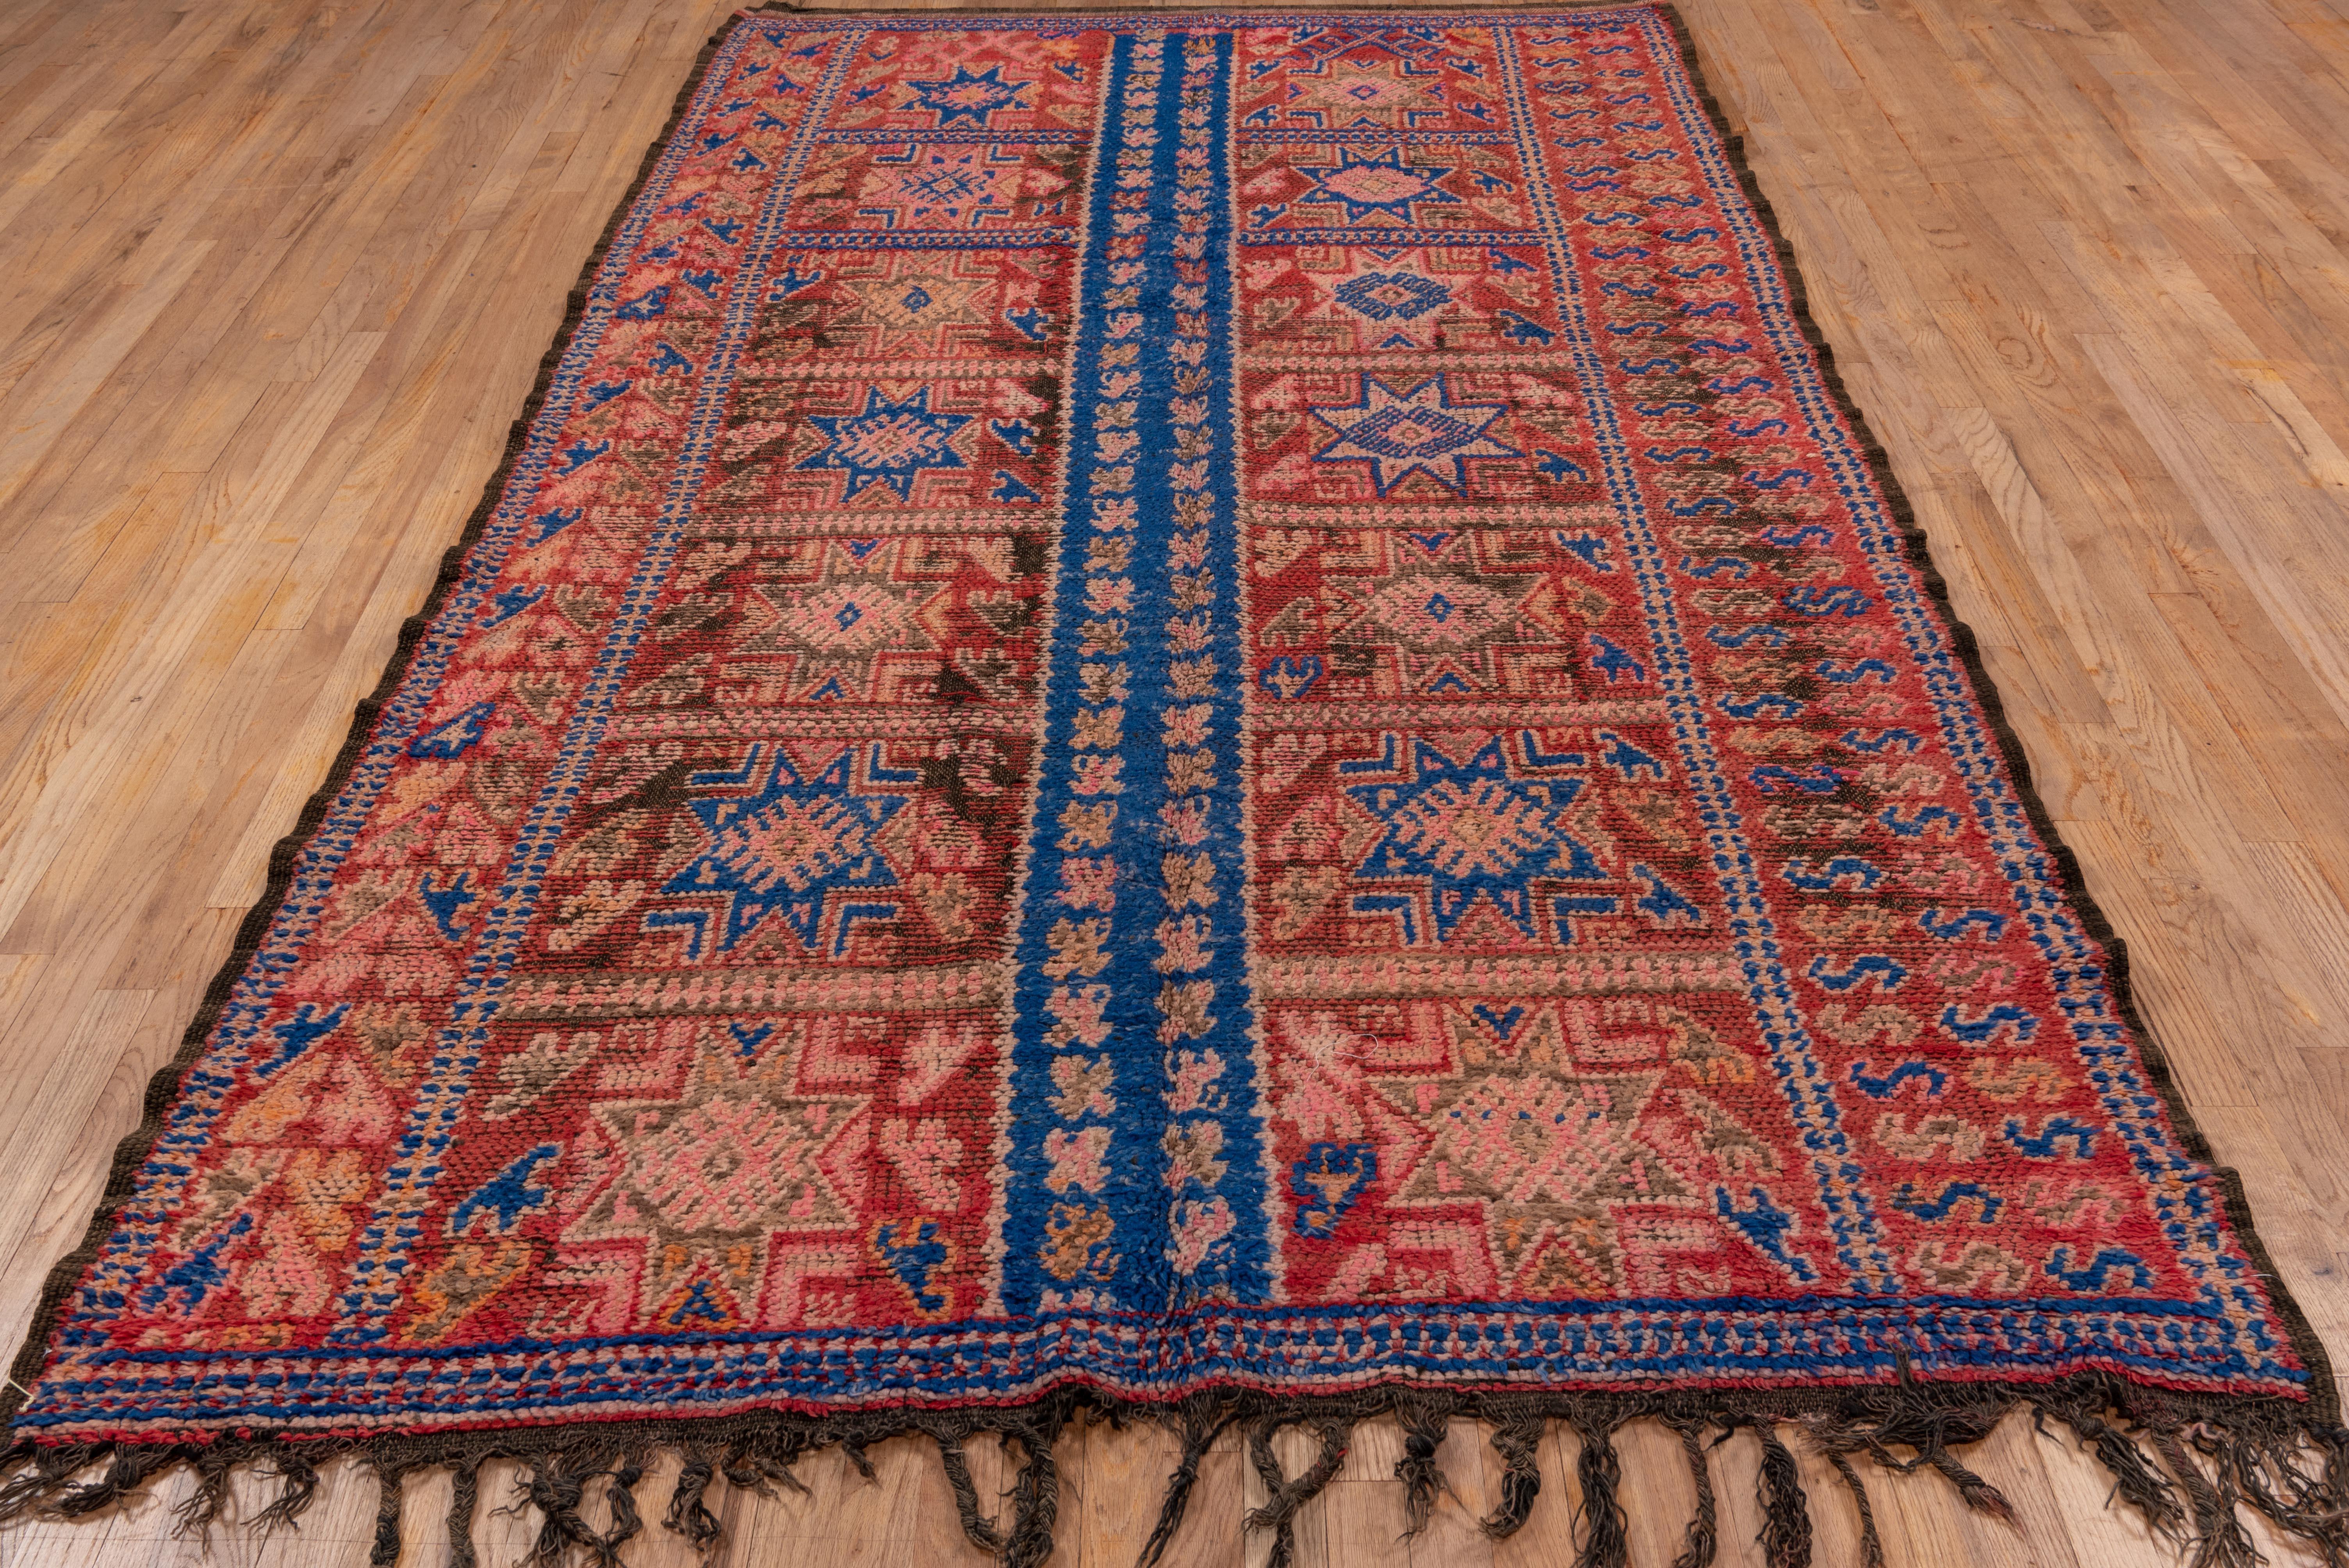 Moroccan village rug - 1930s